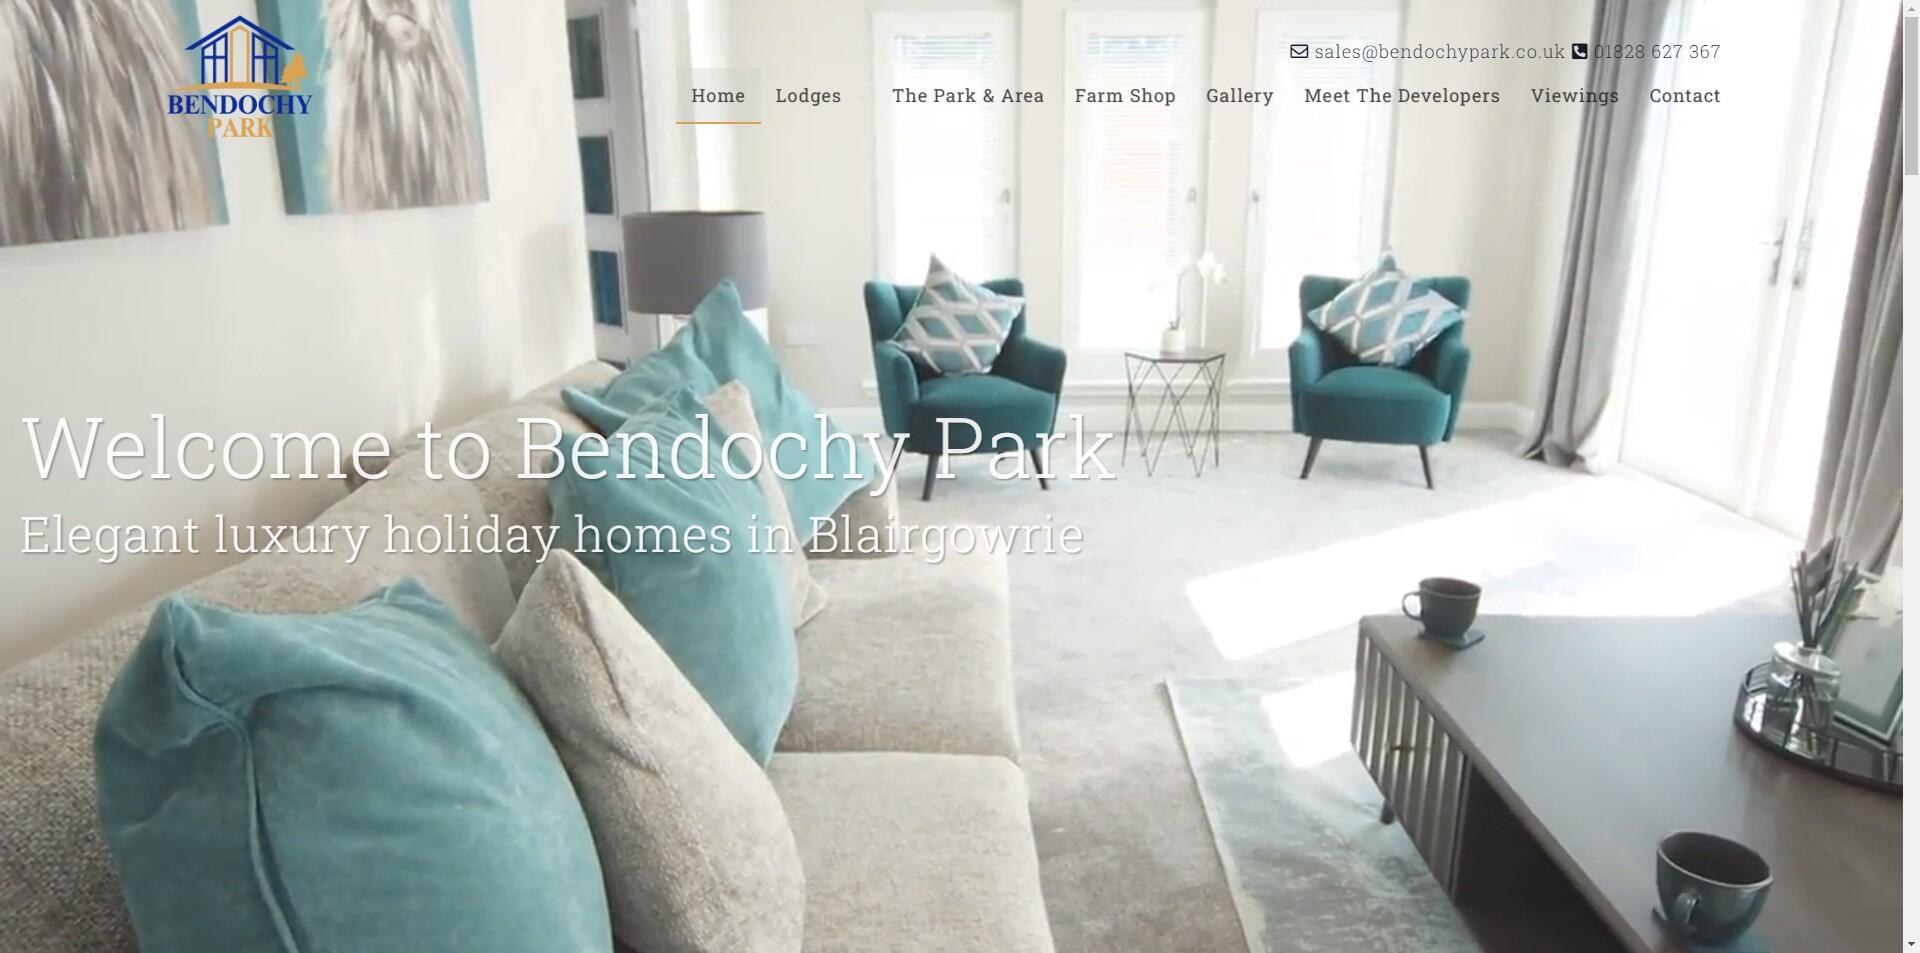 website designed for Bendochy Park